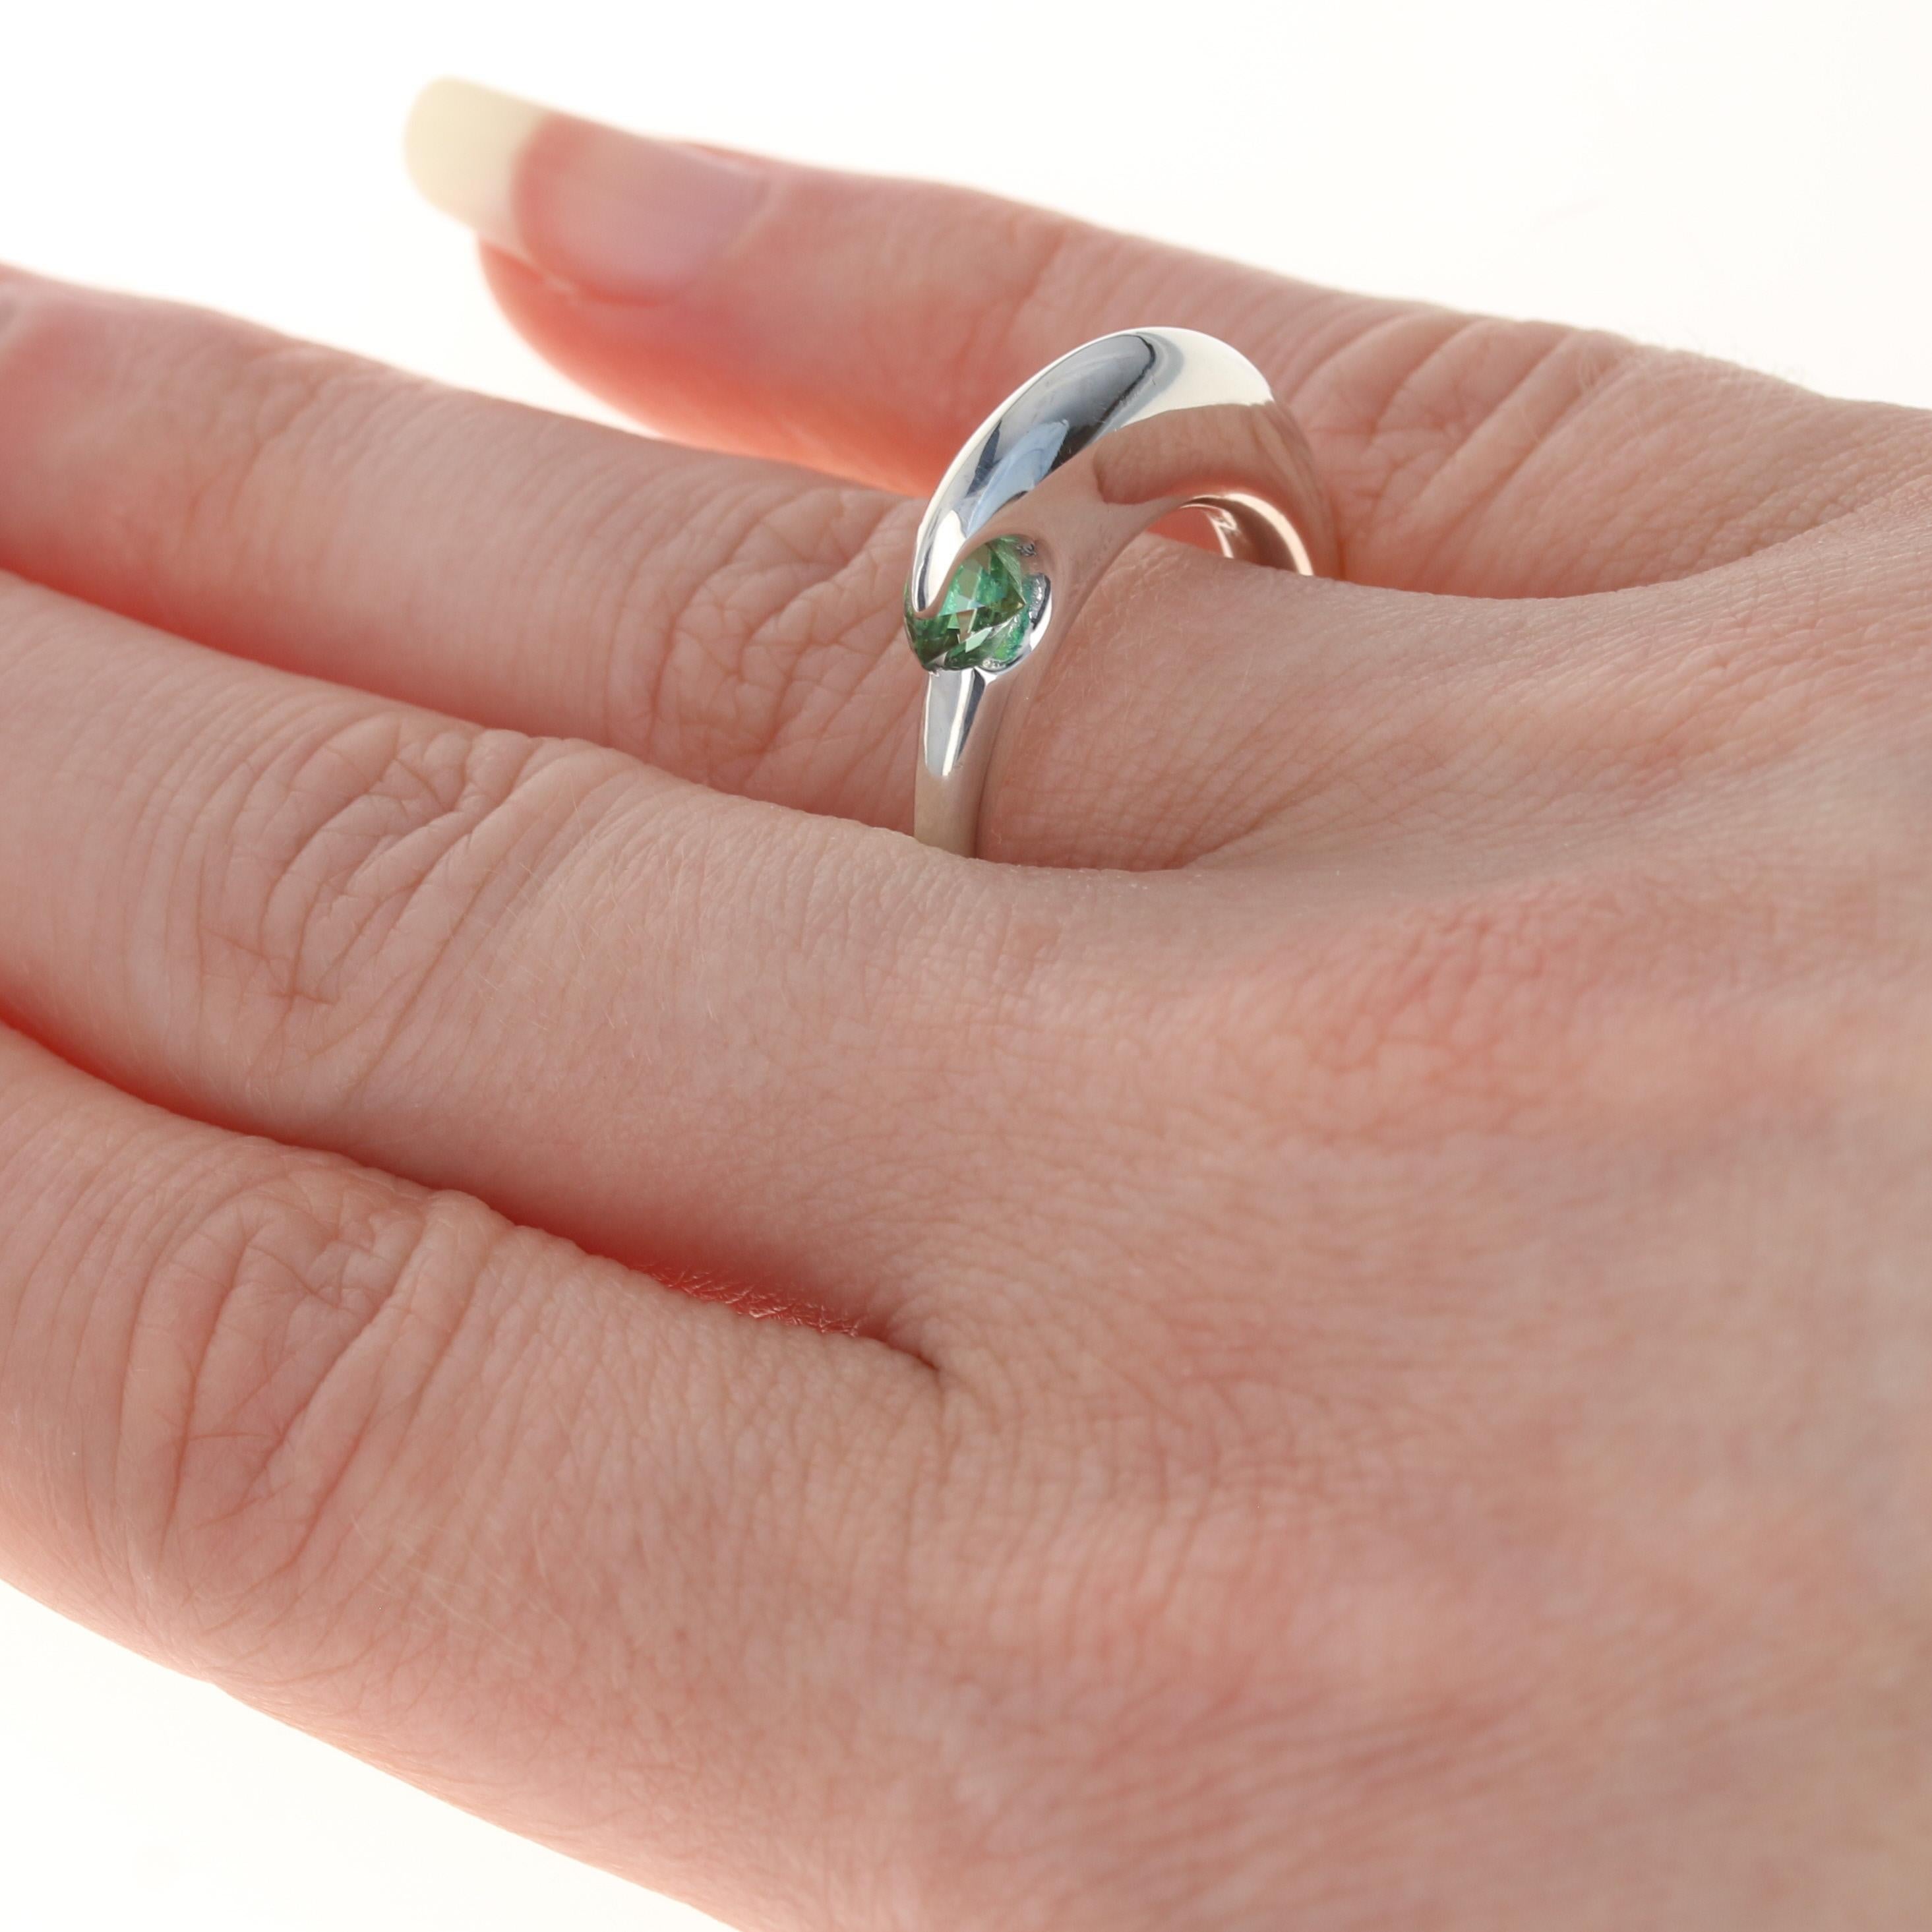 Dieser Ring kostet $200

Dieser Ring ist eine Größe 7 3/4. 

Metallgehalt: Sterling Silber
Ausführung: Poliert

Informationen zum Stein:
Echter Topas - 
Behandlung: Beschichtet
Farbe: Grün
Schnitt: Rund  

Höhe der Oberfläche (von Norden nach